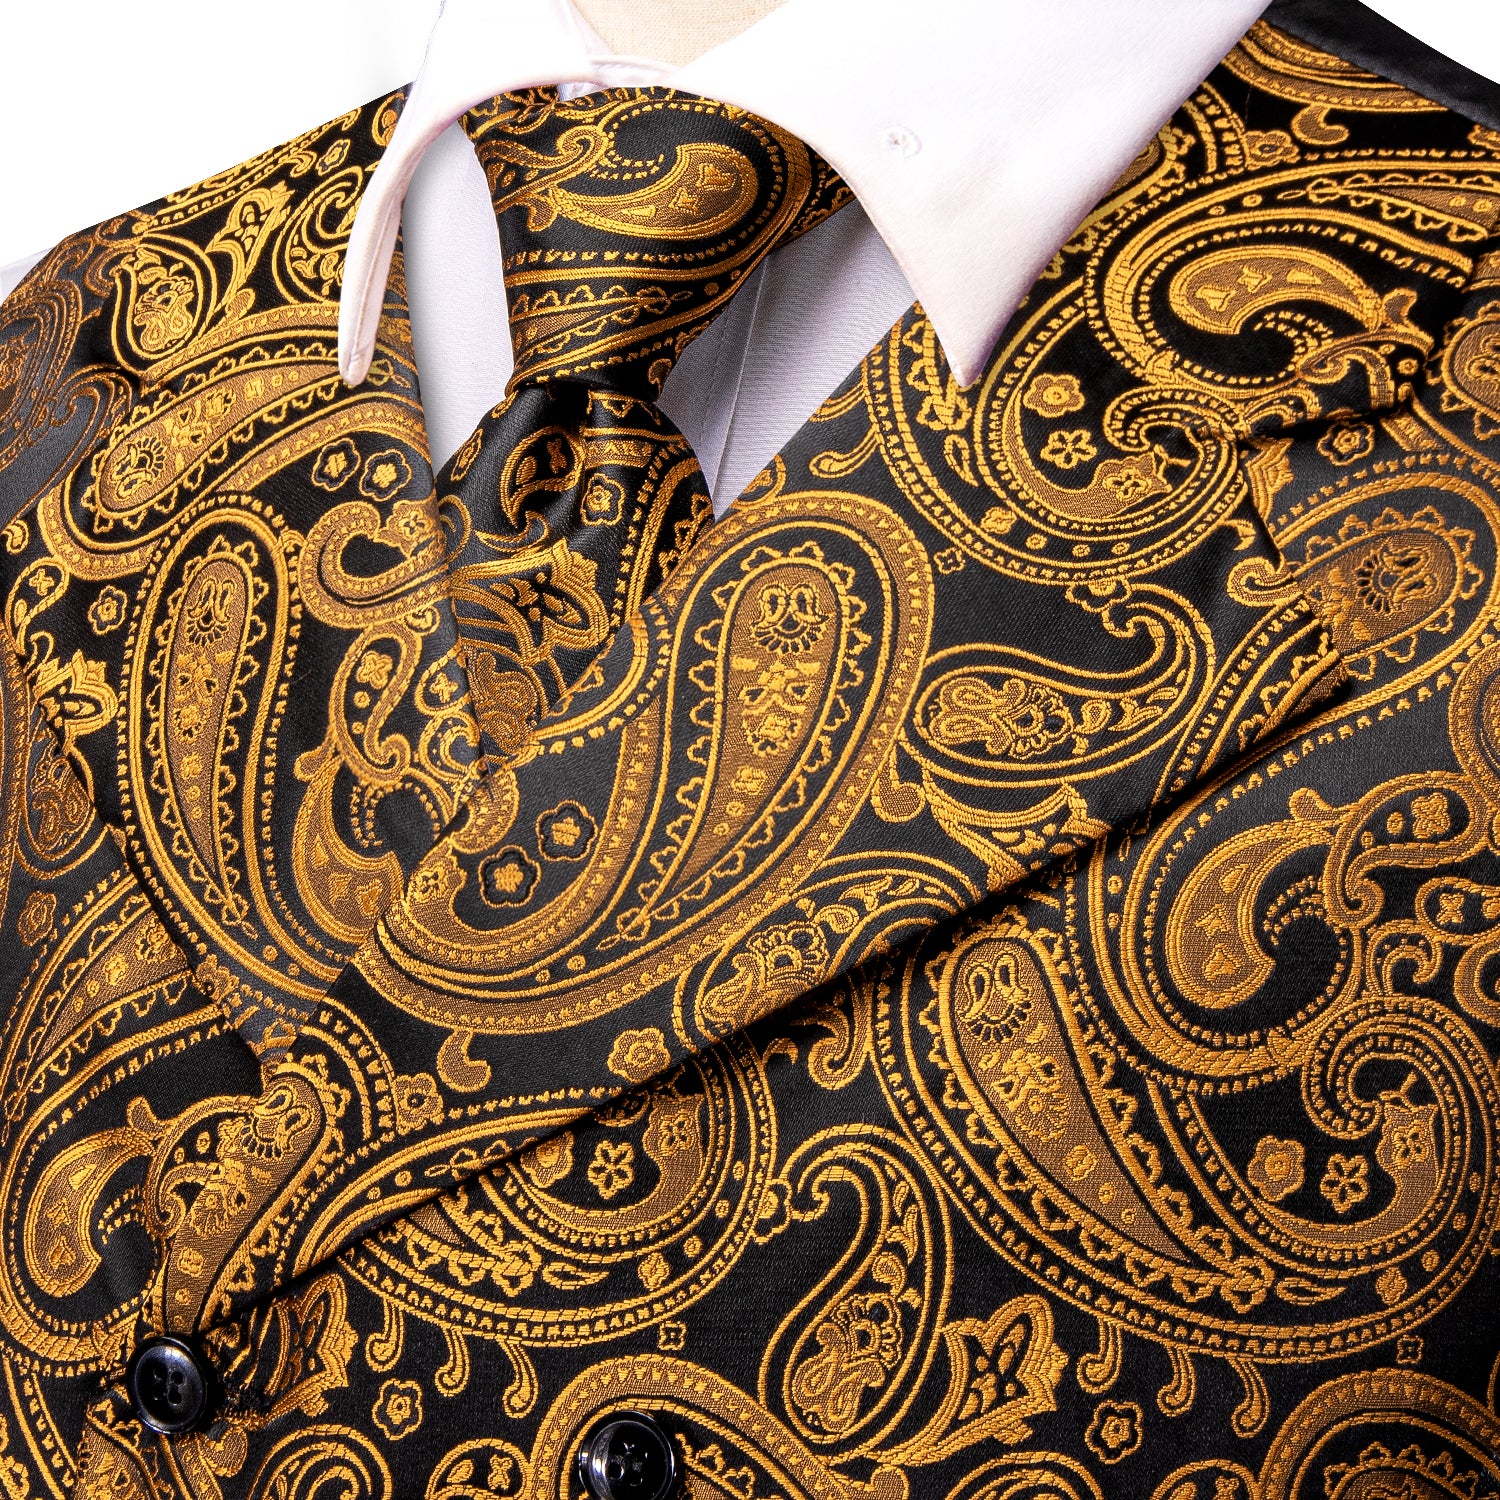 Black Gold Paisley Men's Collar Vest Hanky Cufflinks Tie Set